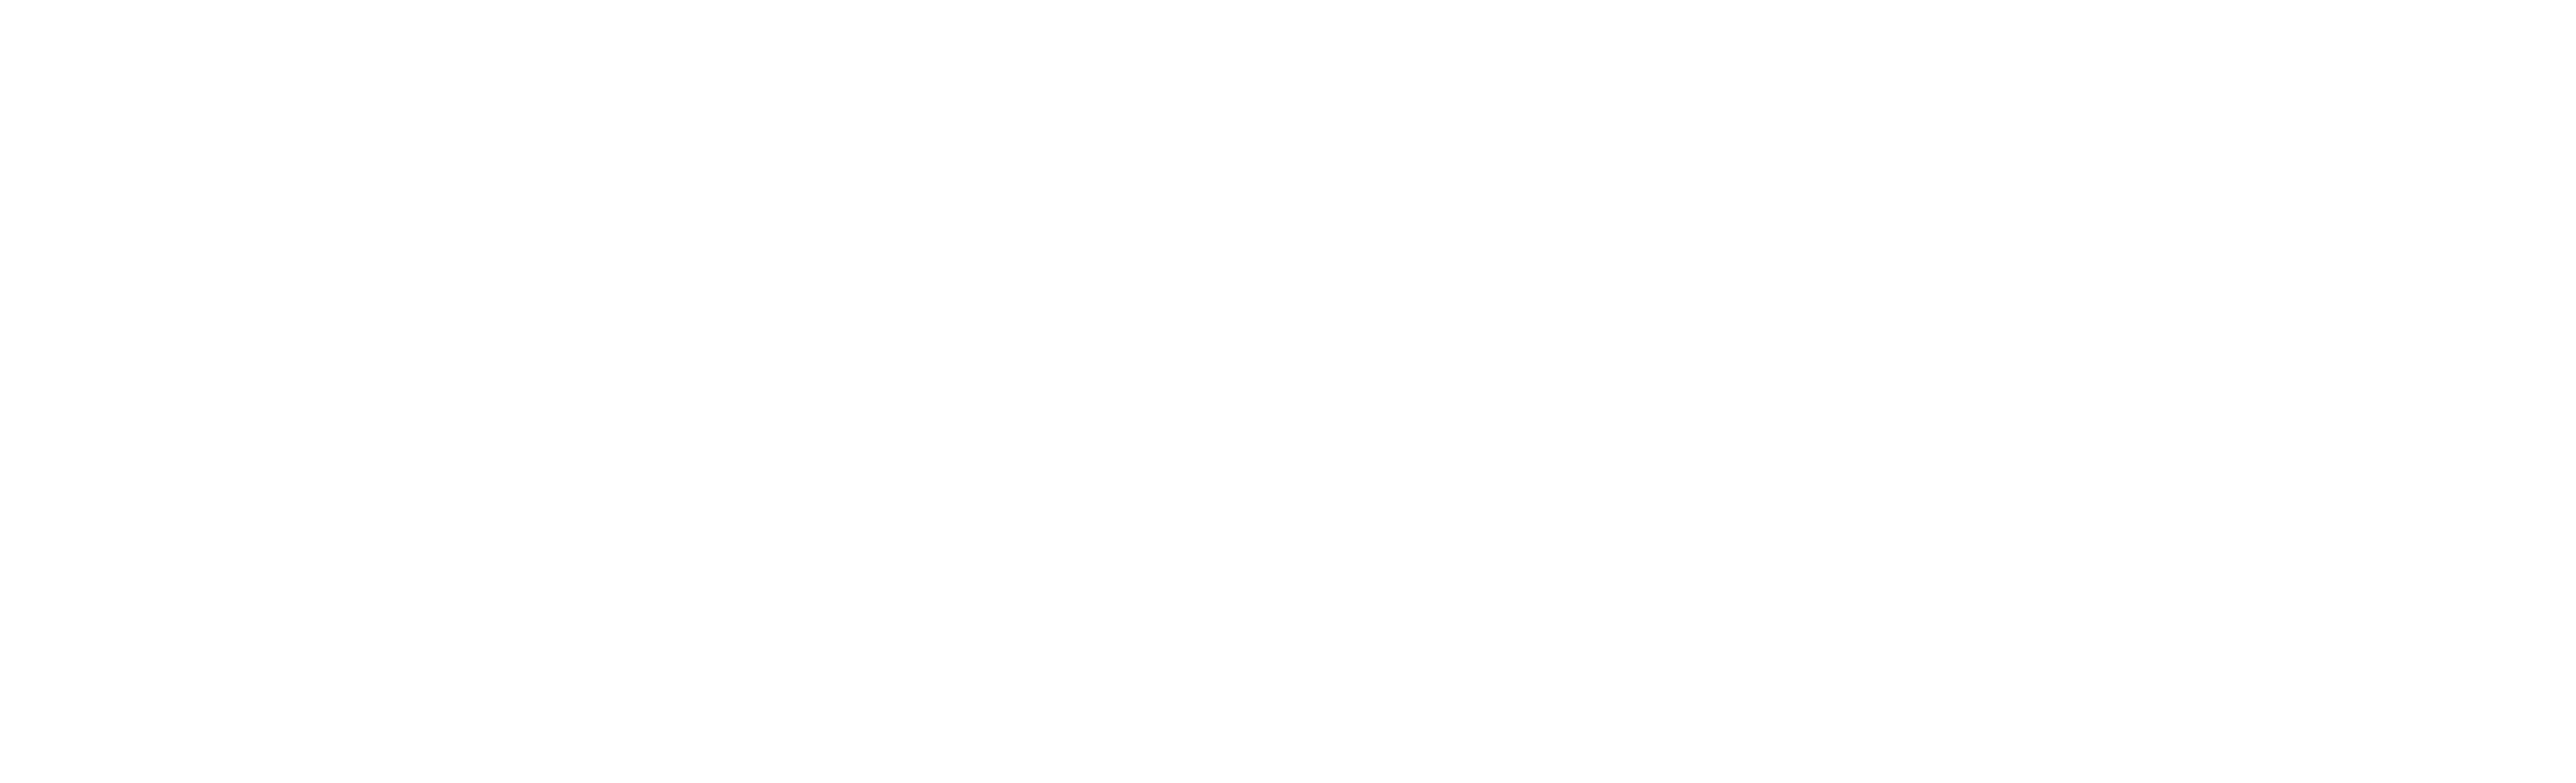 Holloway Logo - Cycling Royal Holloway Bears